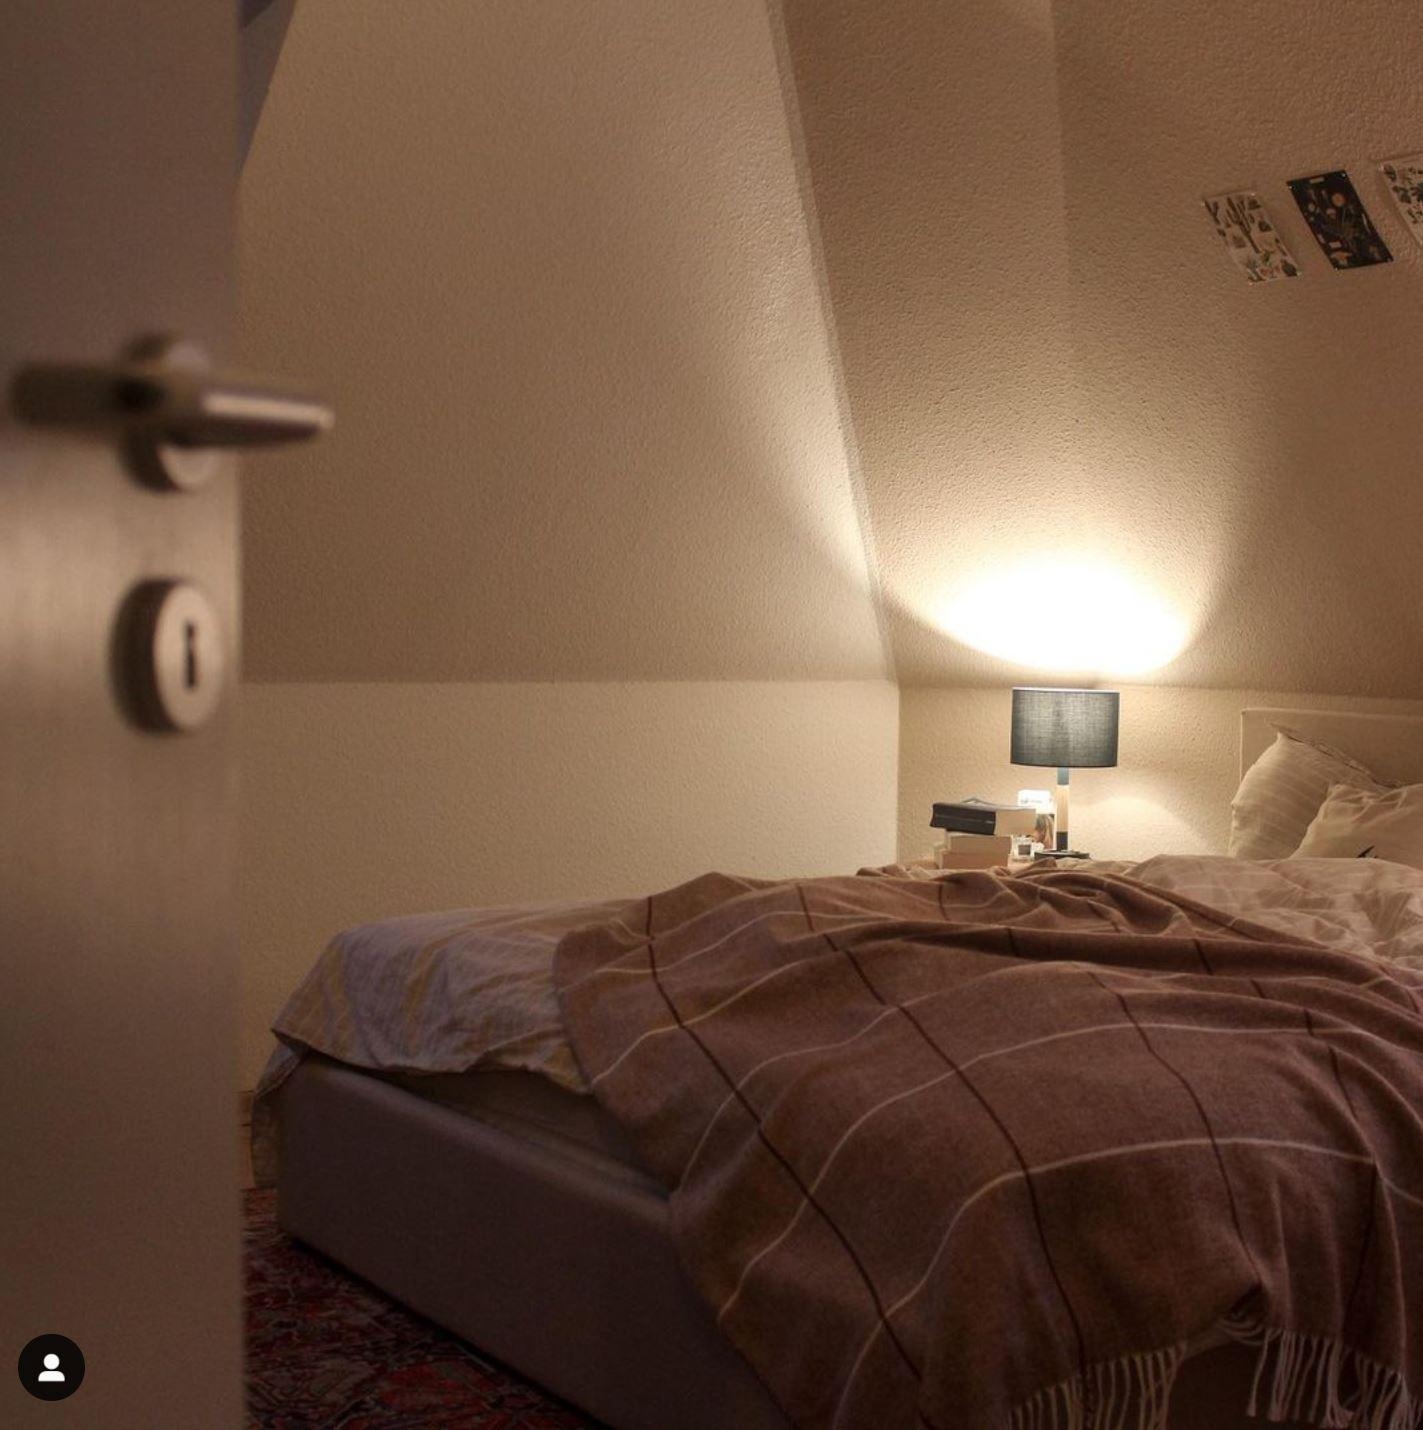 Willkommen im Schlafzimmer :)
#beige #leinen #terra